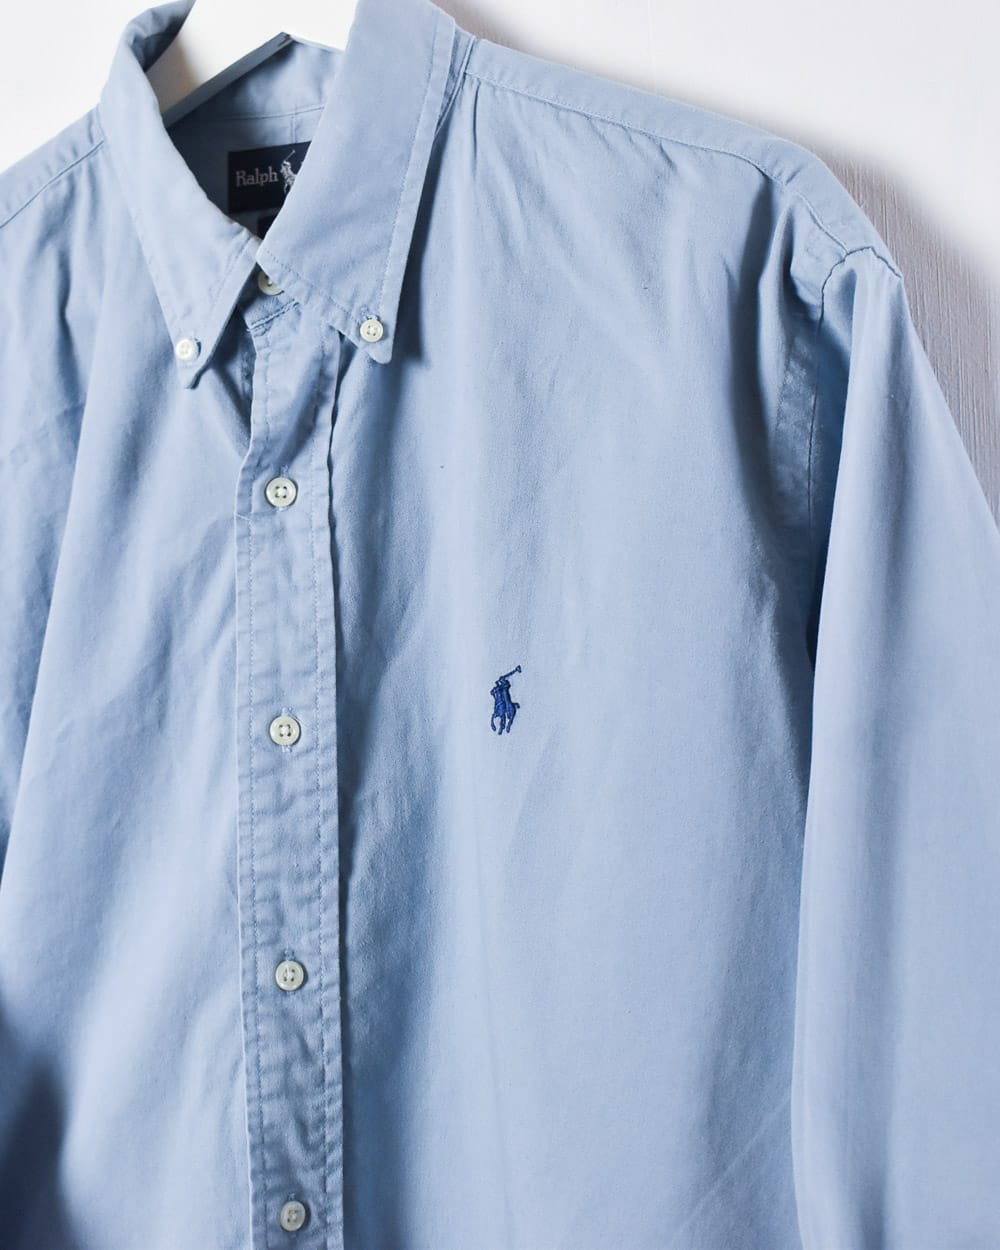 Polo Ralph Lauren Blaire Shirt - Medium